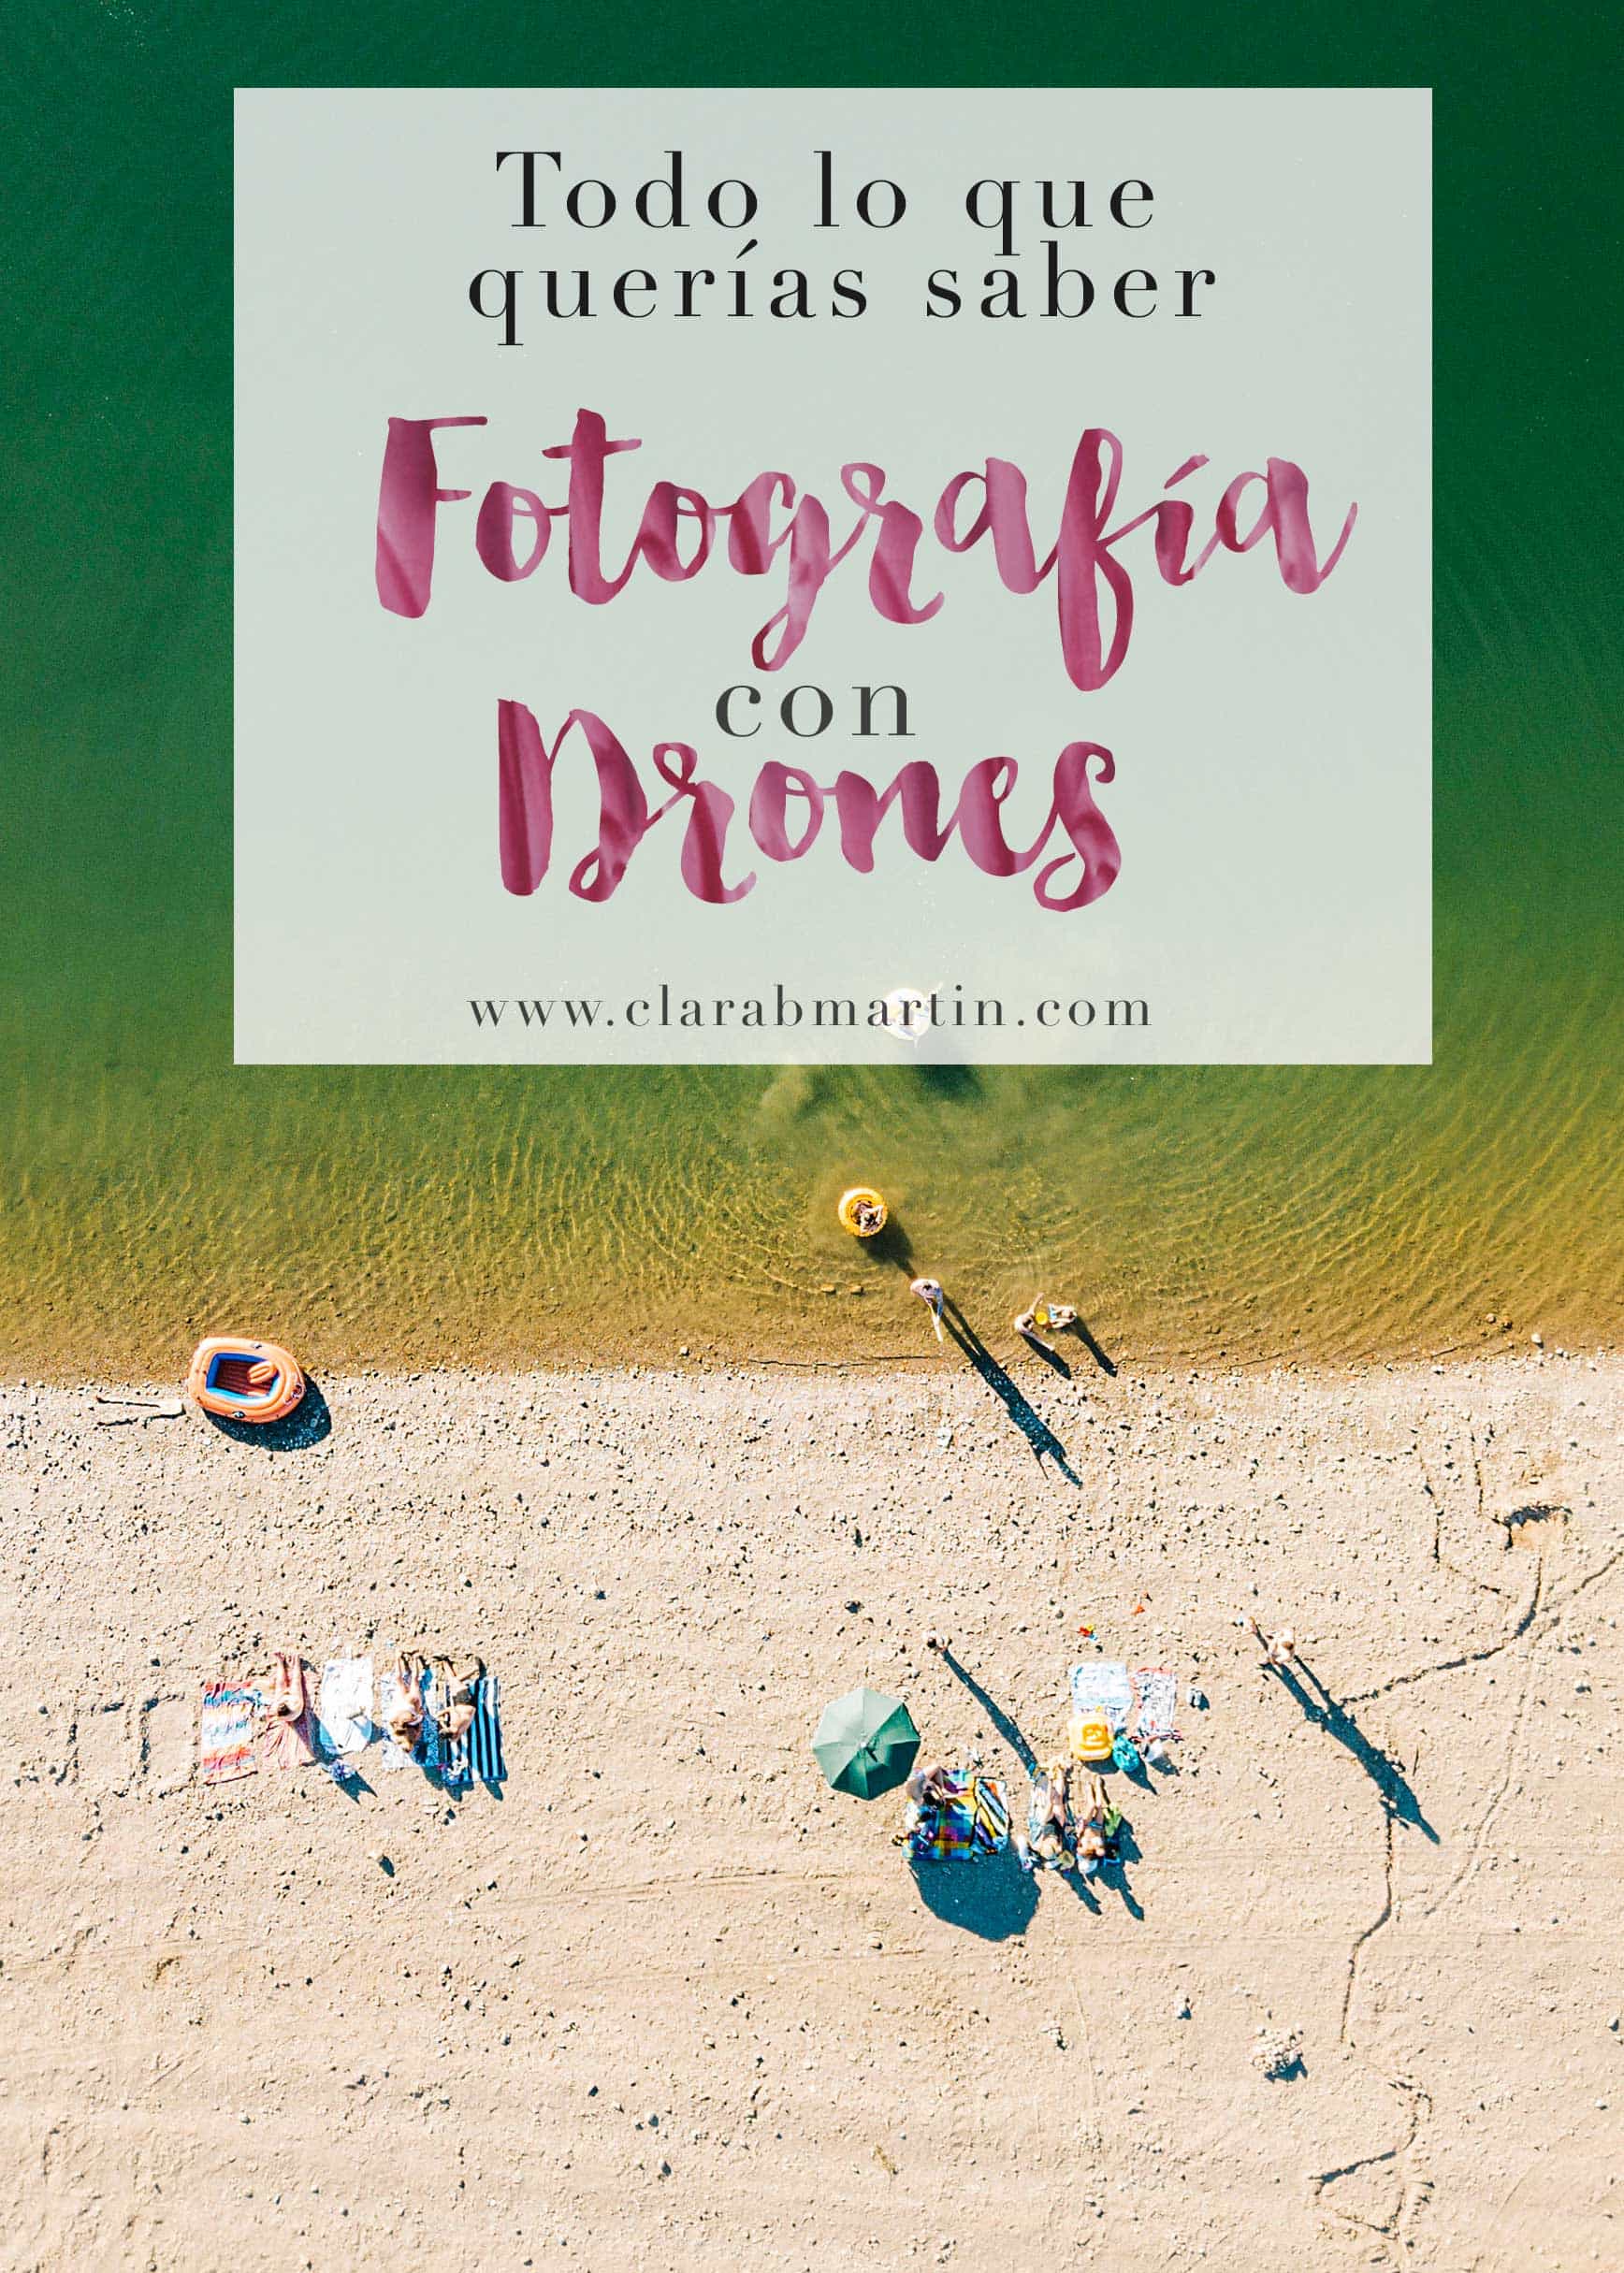 Fotografia-con-drones